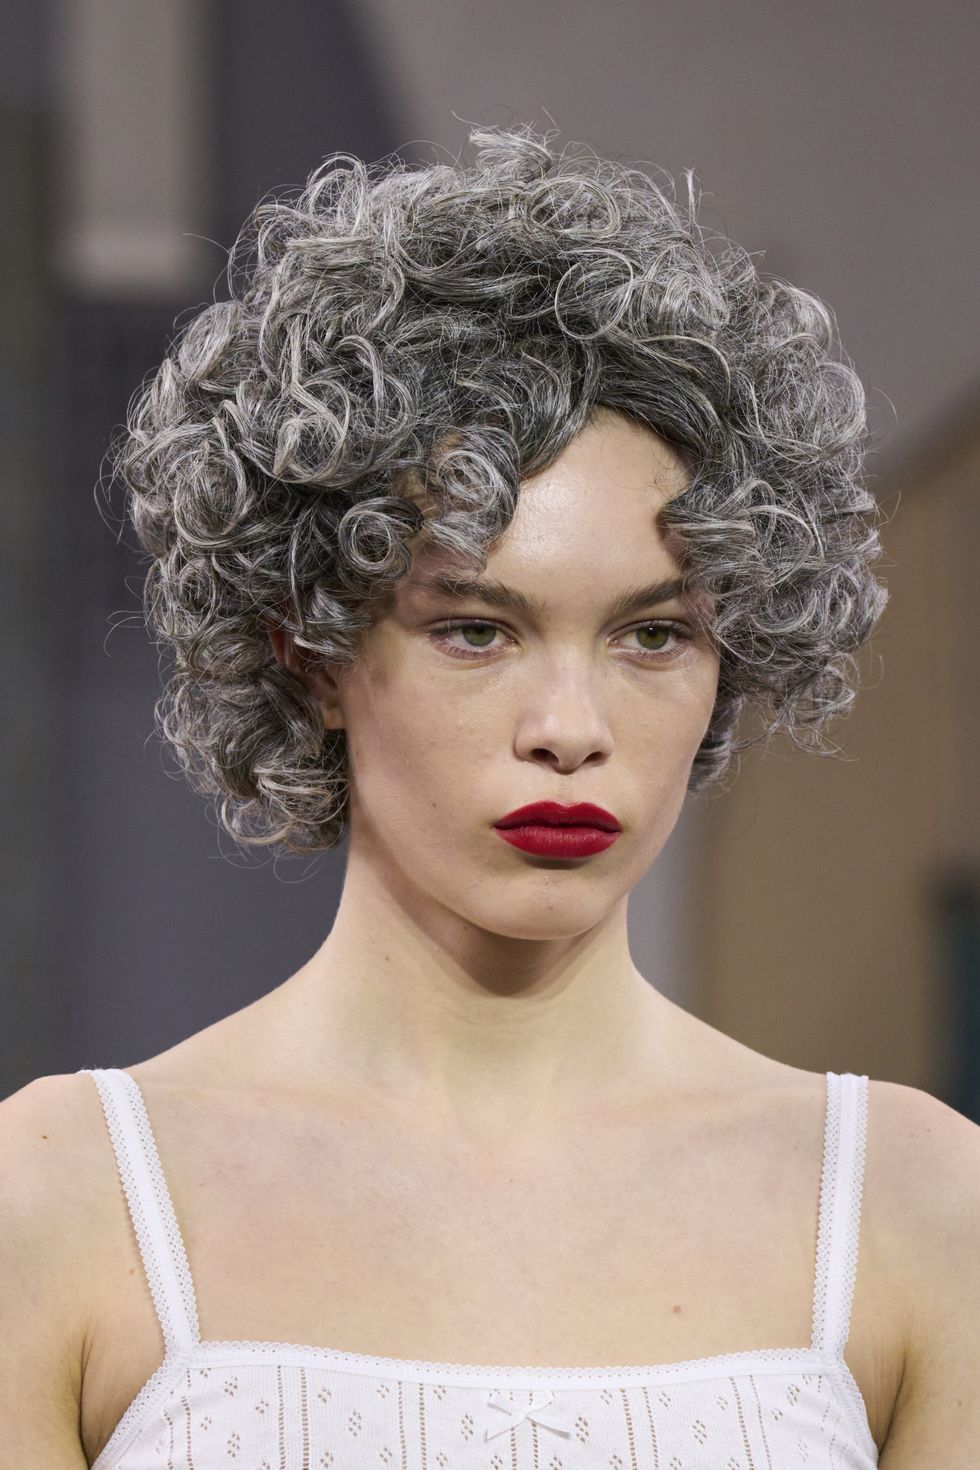 1 - Dalle passerelle, i tagli di capelli più belli della London Fashion Week